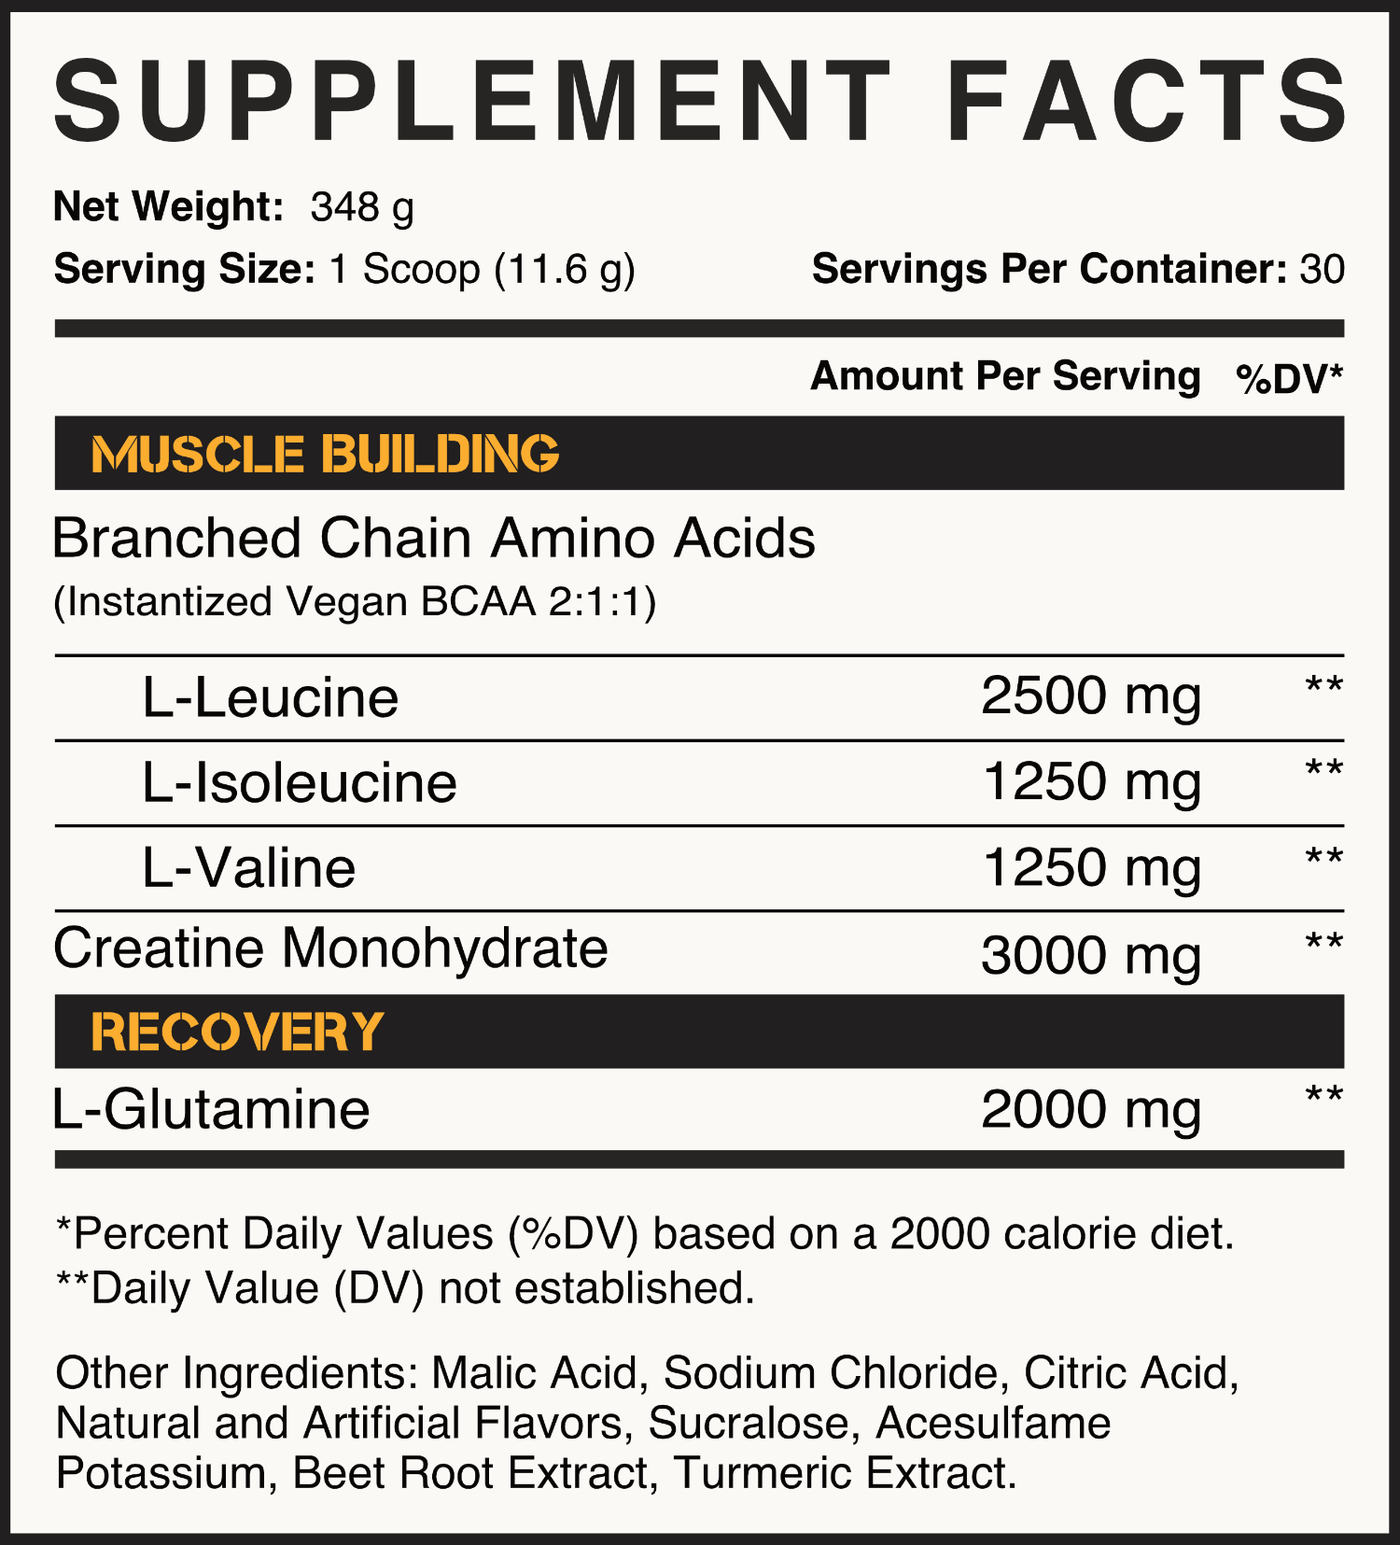 Peak Post Workout - Kodiak Supplements